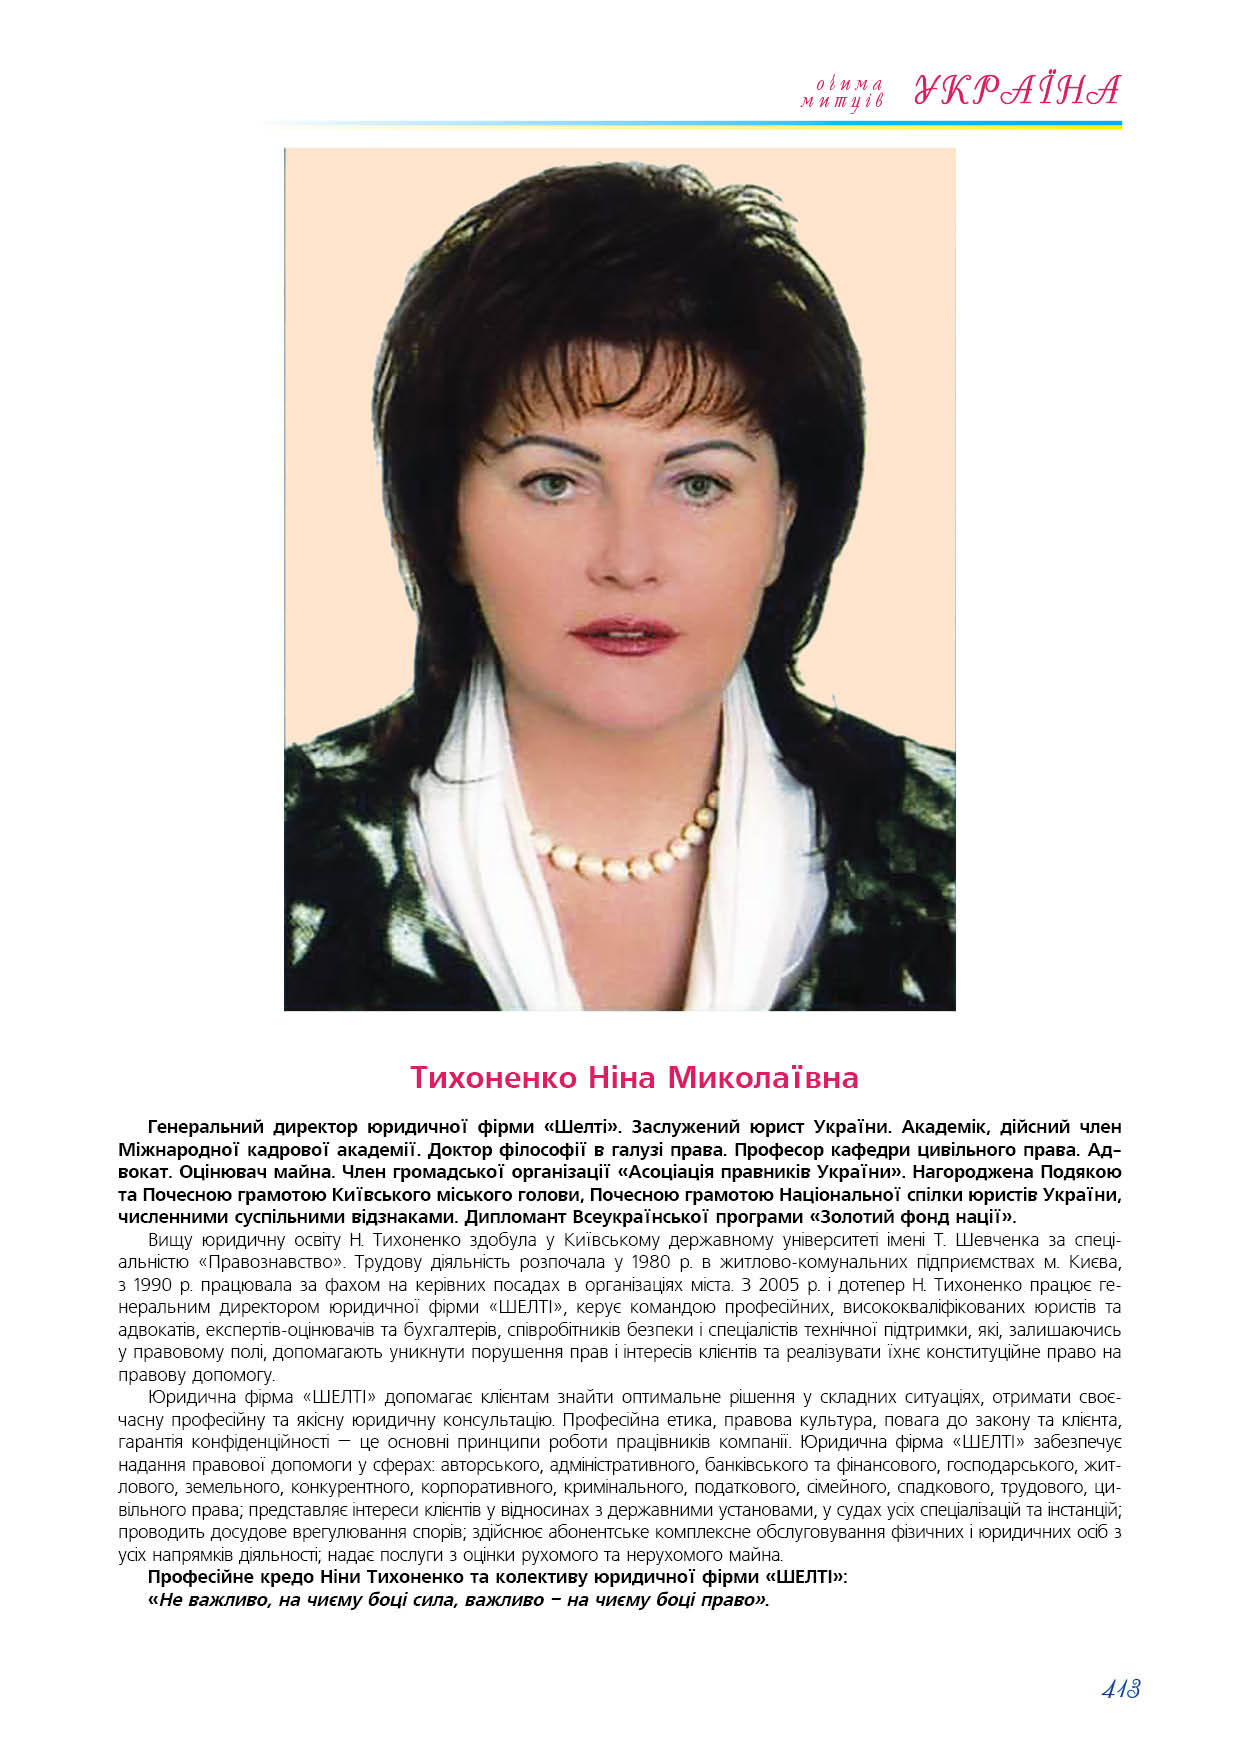 Тихоненко Ніна Миколаївна